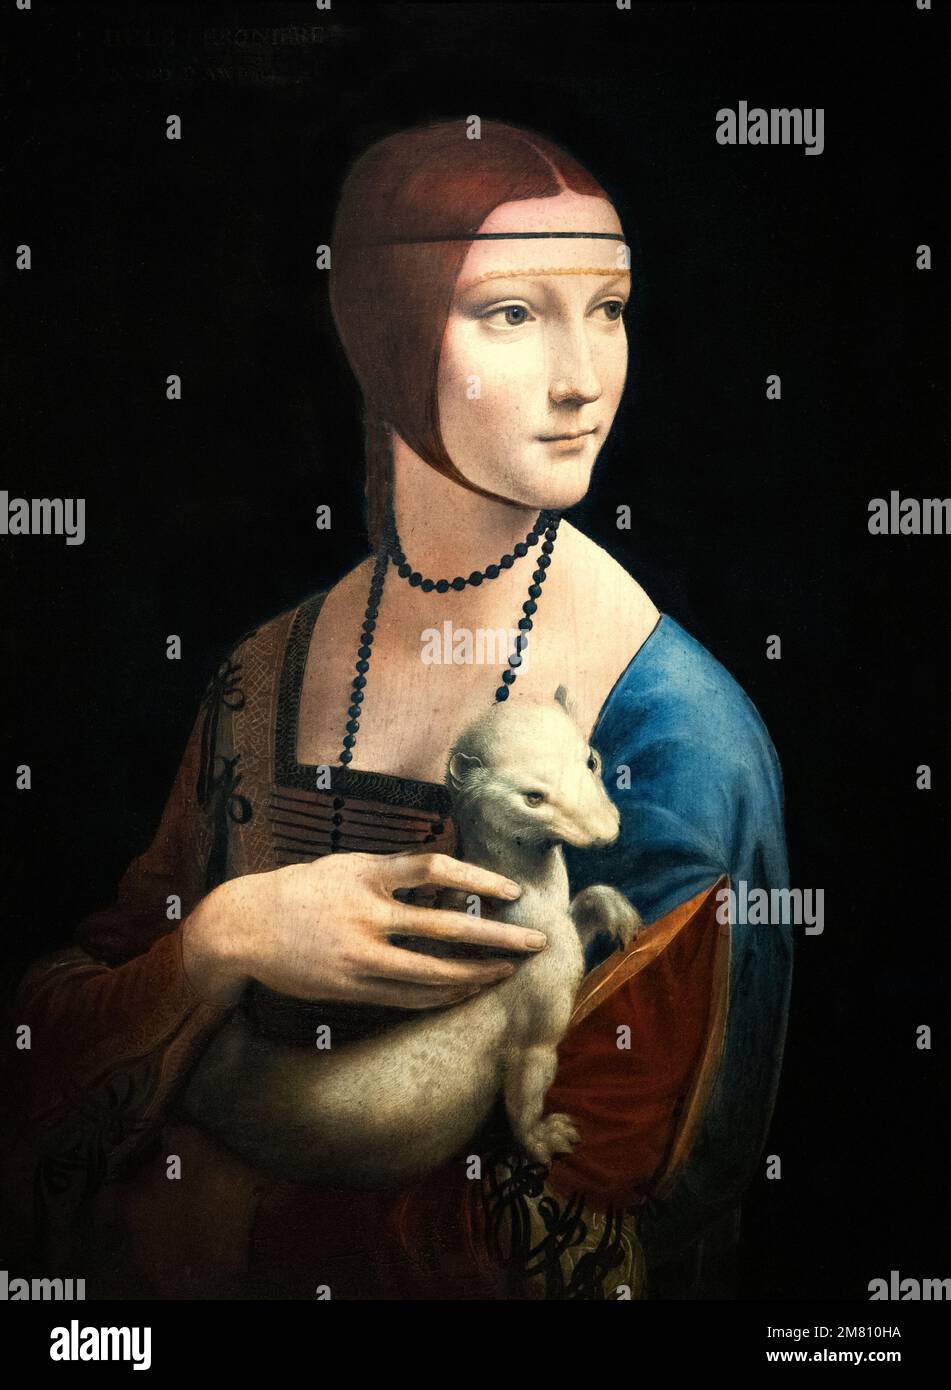 Art médiéval; peinture Renaissance; peinture Léonard de Vinci, portrait de 'Dame avec Ermine', 1489-1491; au Musée Czartoryski, Cracovie, Pologne Banque D'Images